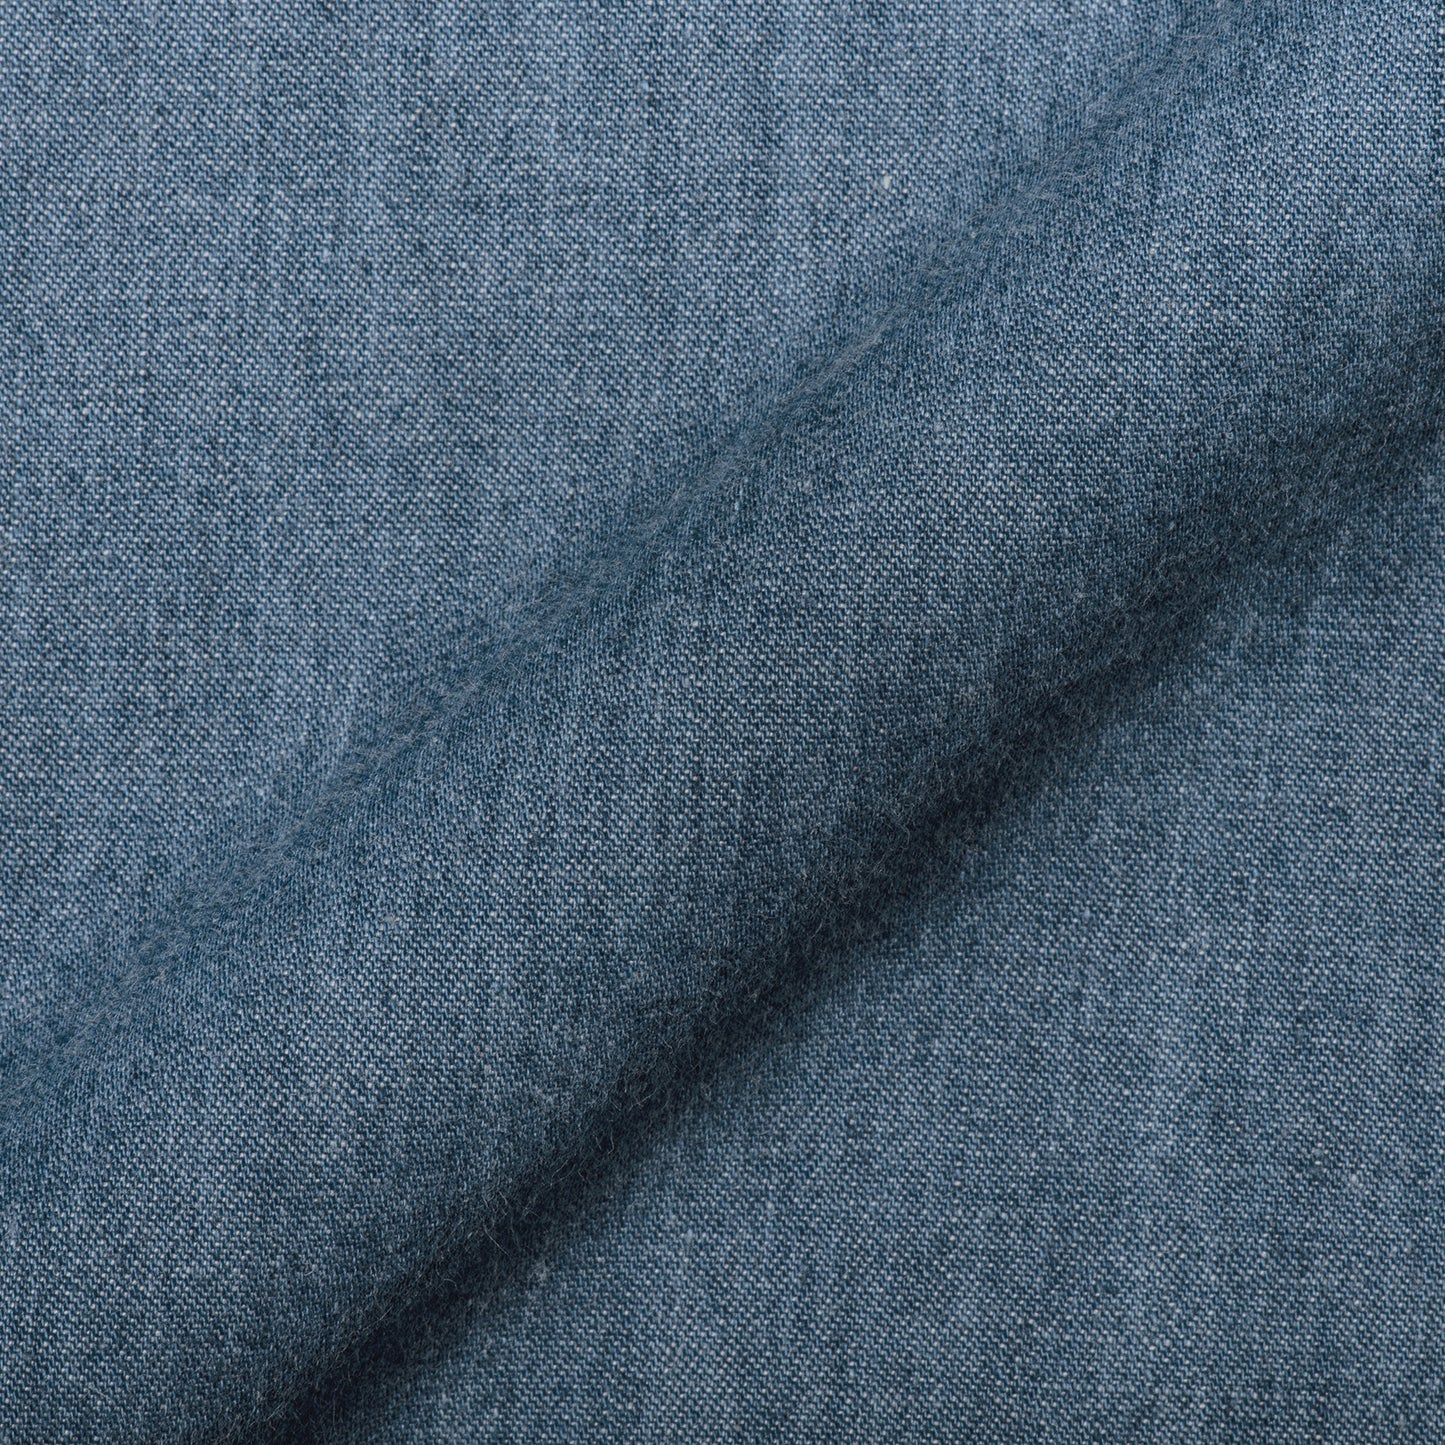 Dark Blue Denim Cotton Fabric